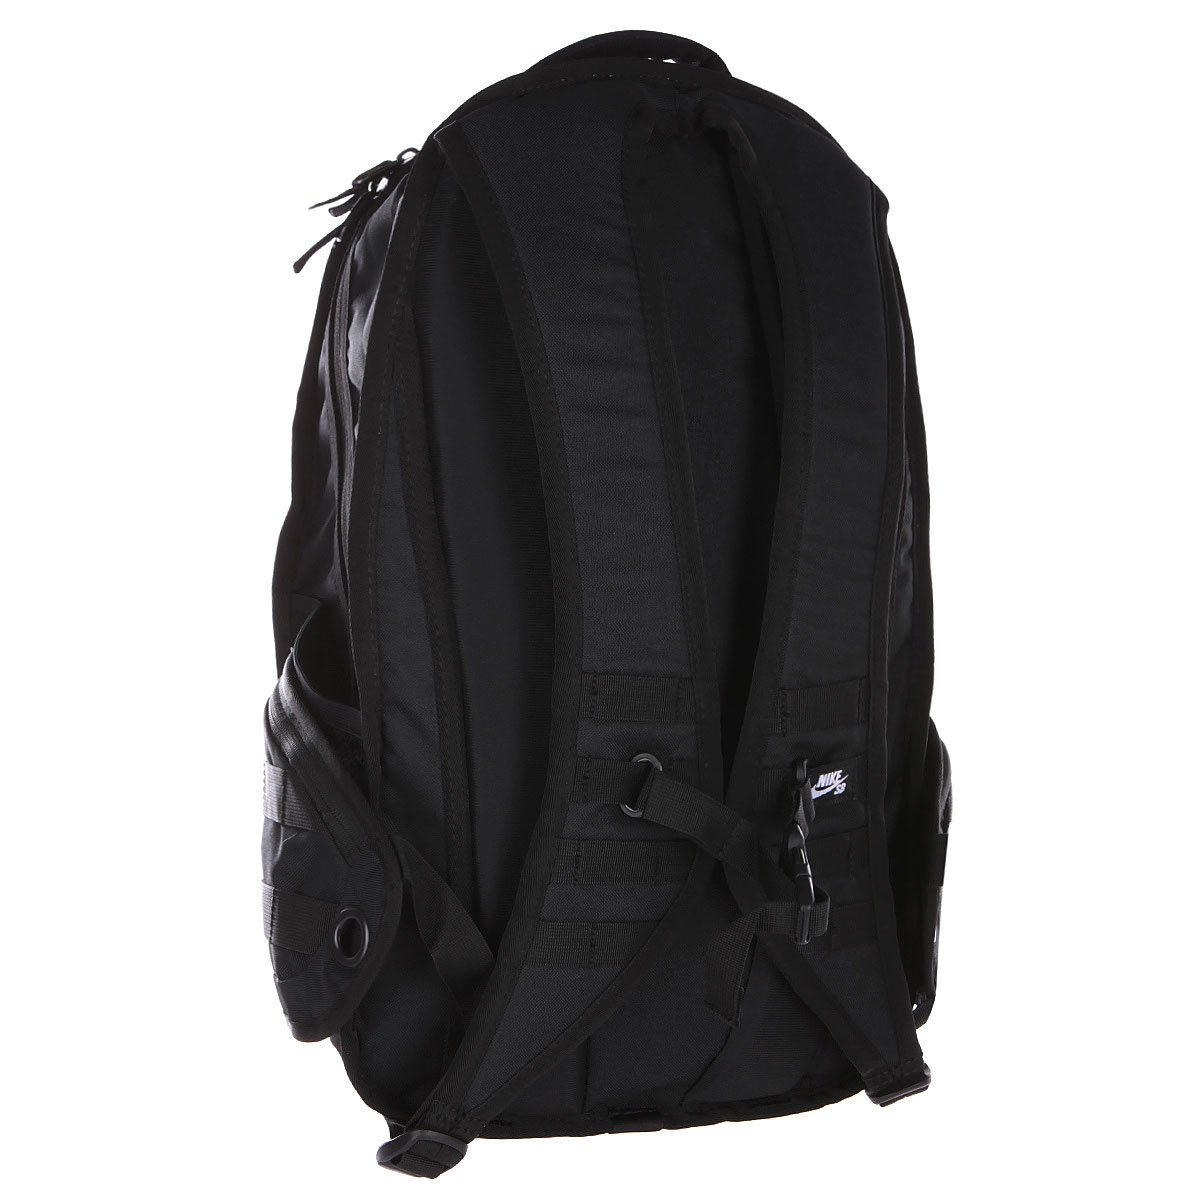 Купить рюкзак спортивный Nike Net Prophet Backpack Cargo (BA5130-001) в интернет-магазине Proskater.ru